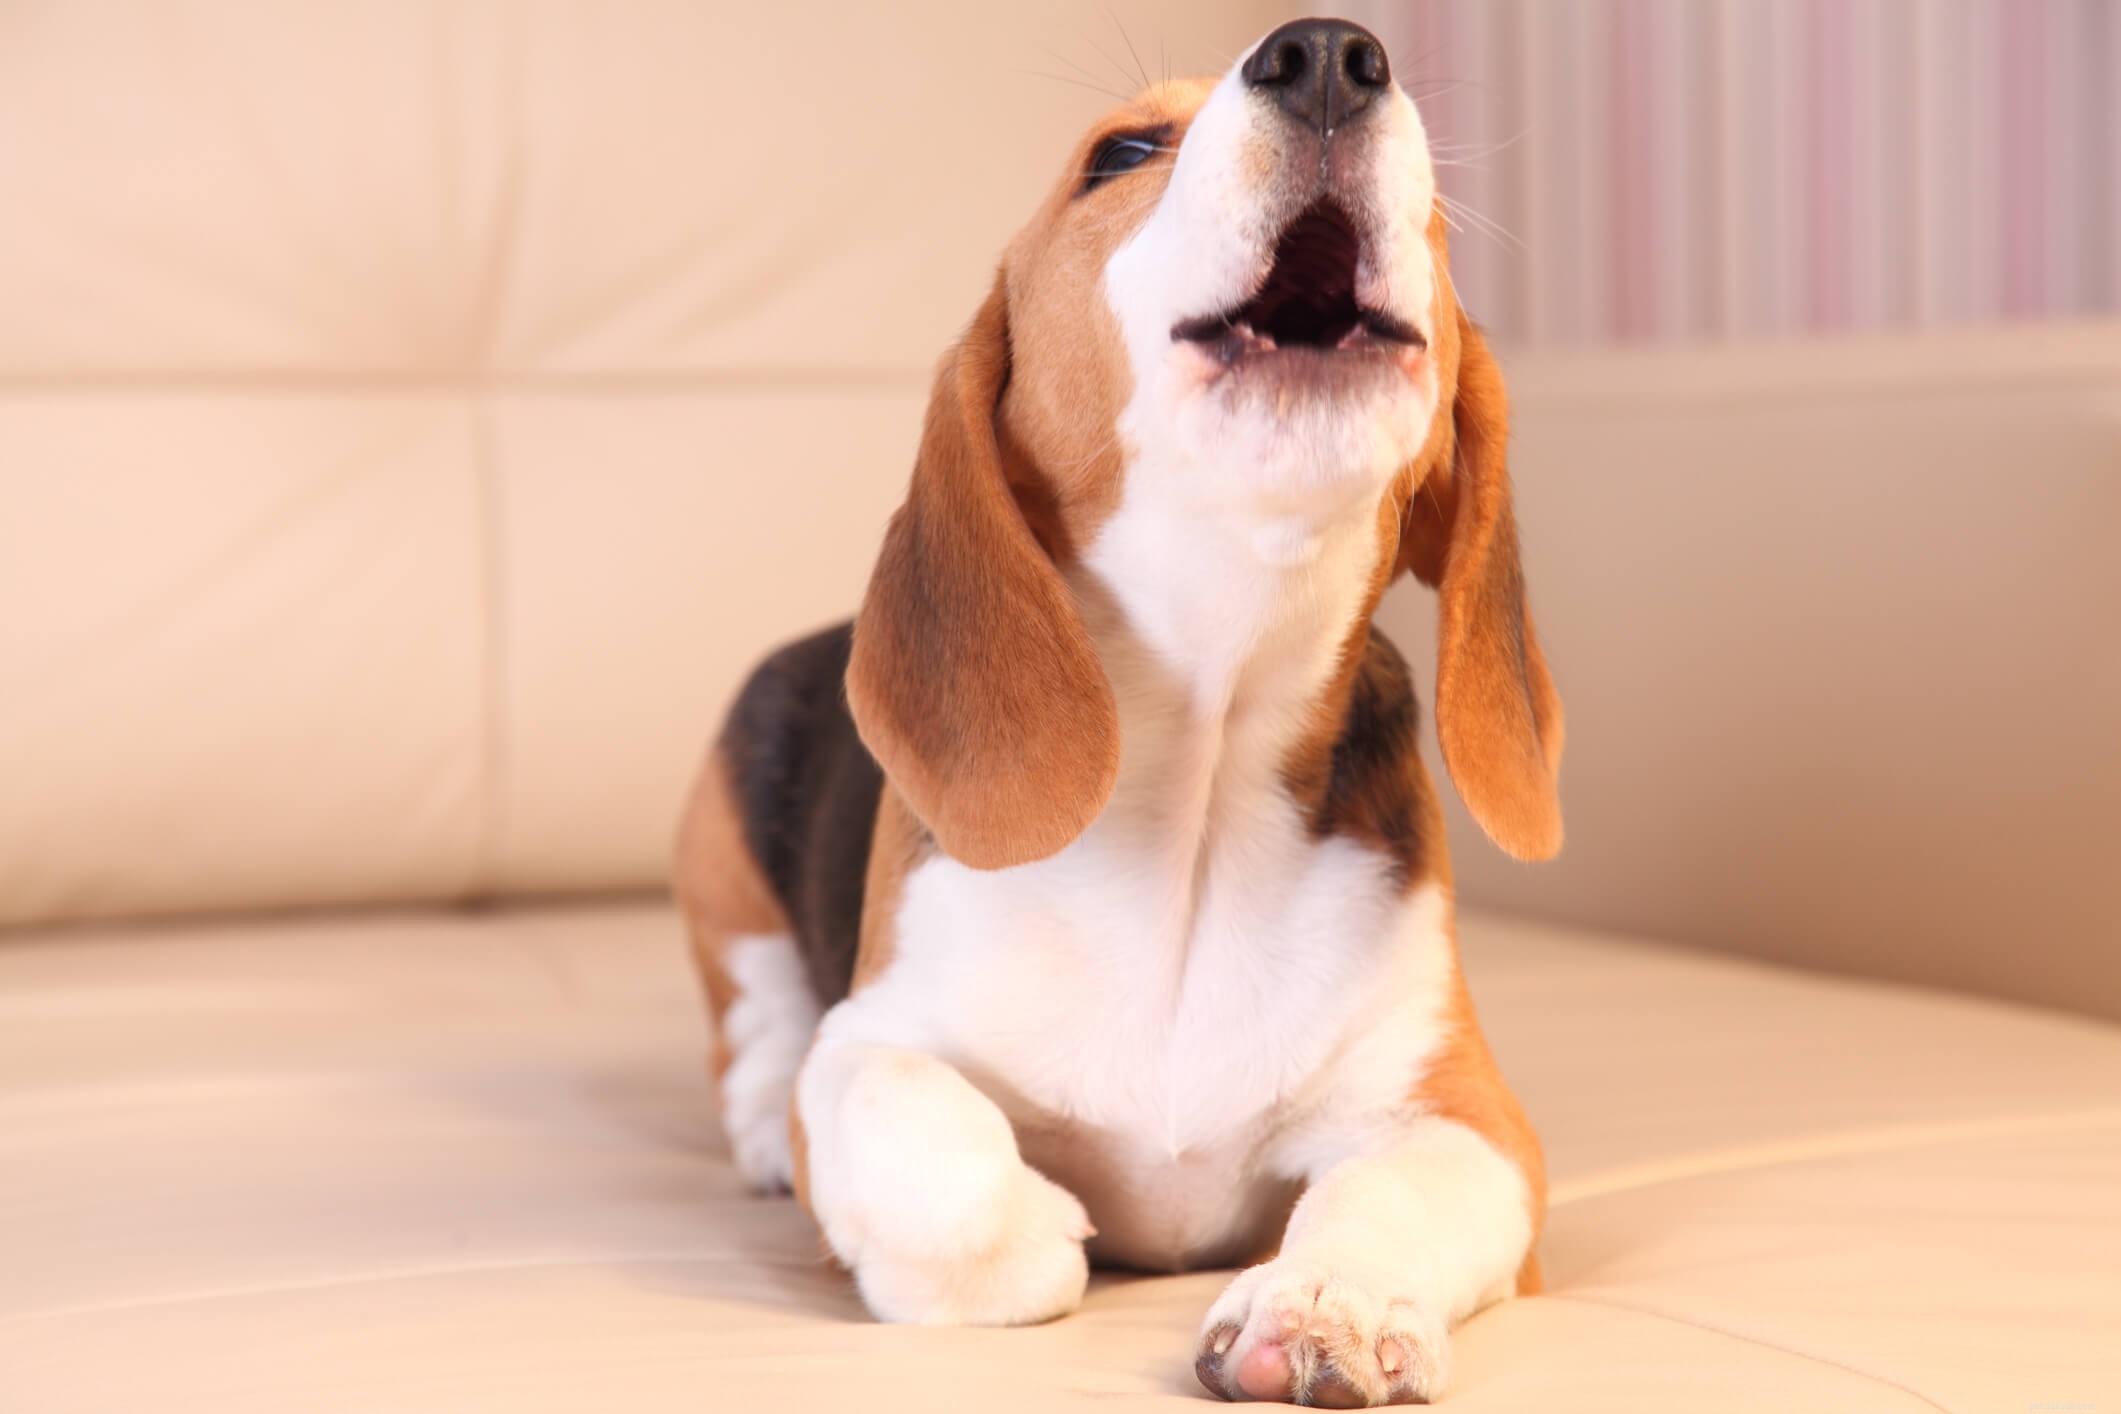 Cosa significano i diversi rumori dei cani?